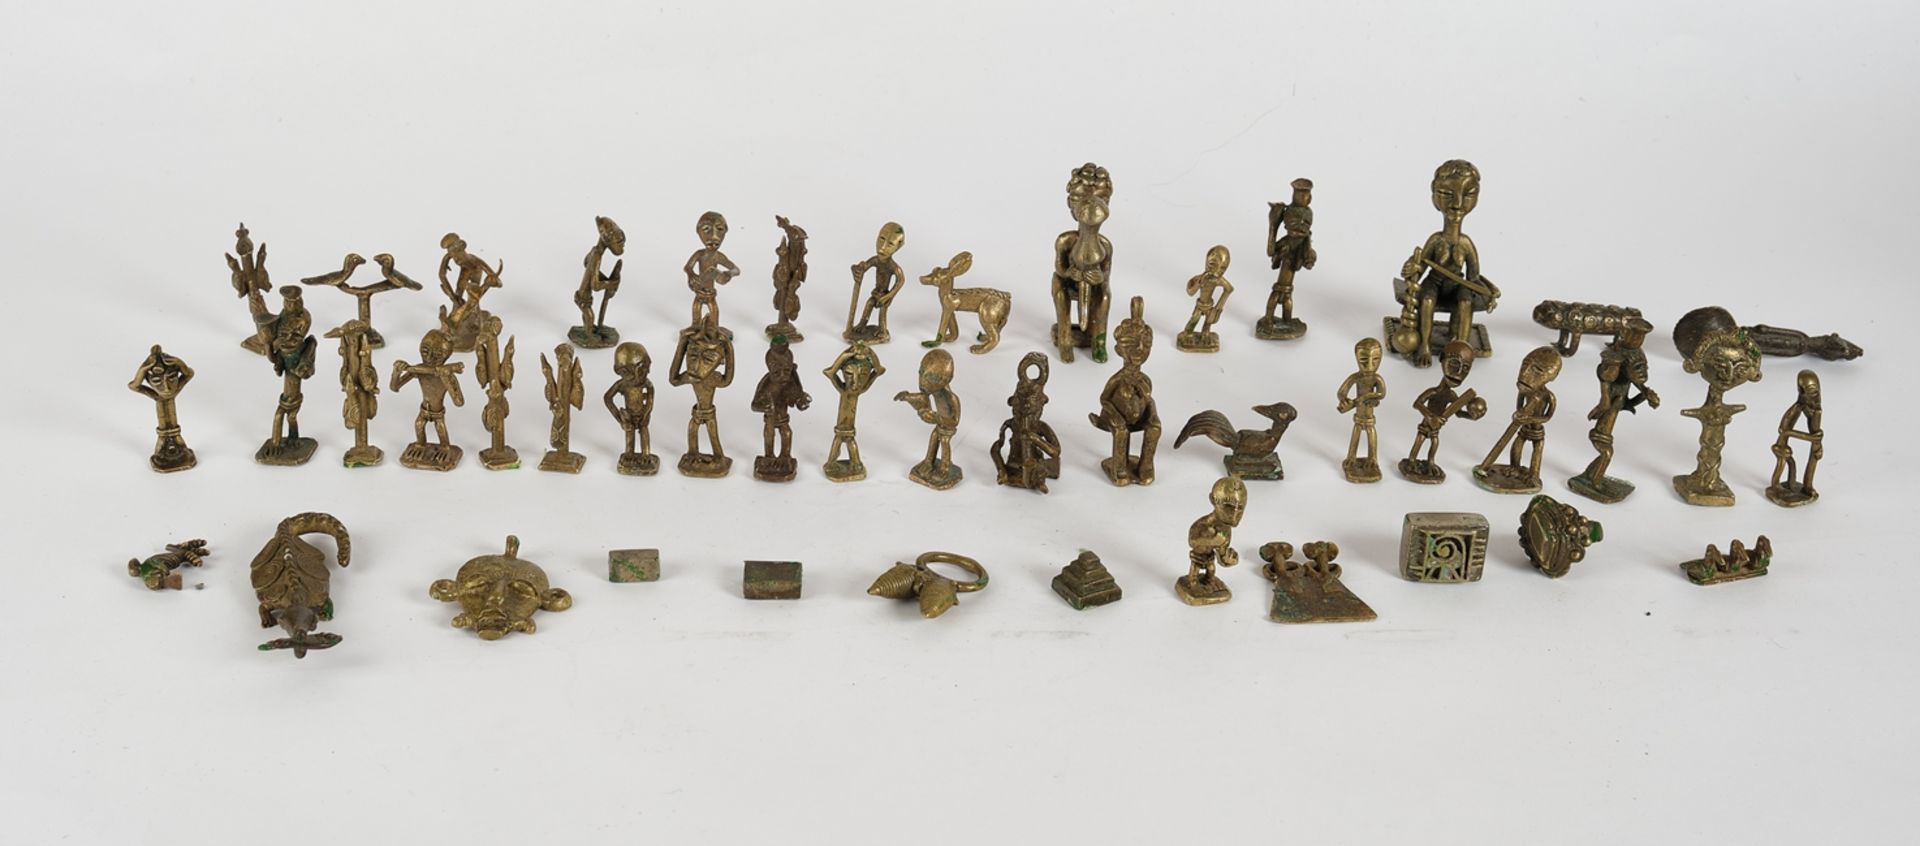 46 Gewichte, Messing, verschiedene Ausführungen, wohl Ashanti, Ghana, Afrika, ca. 1-9 cm hoch